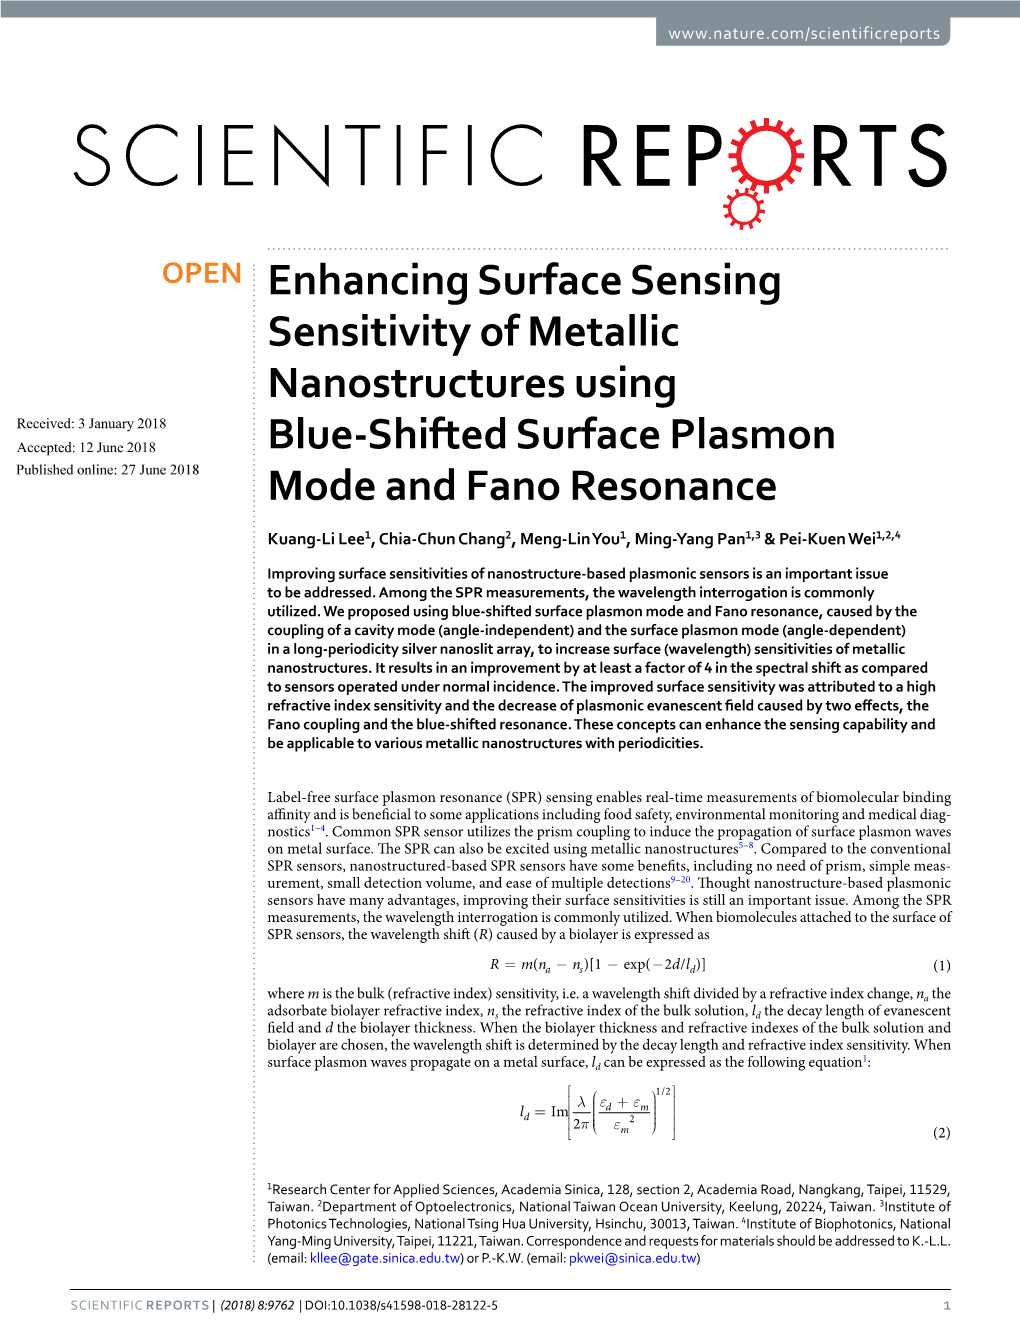 Enhancing Surface Sensing Sensitivity of Metallic